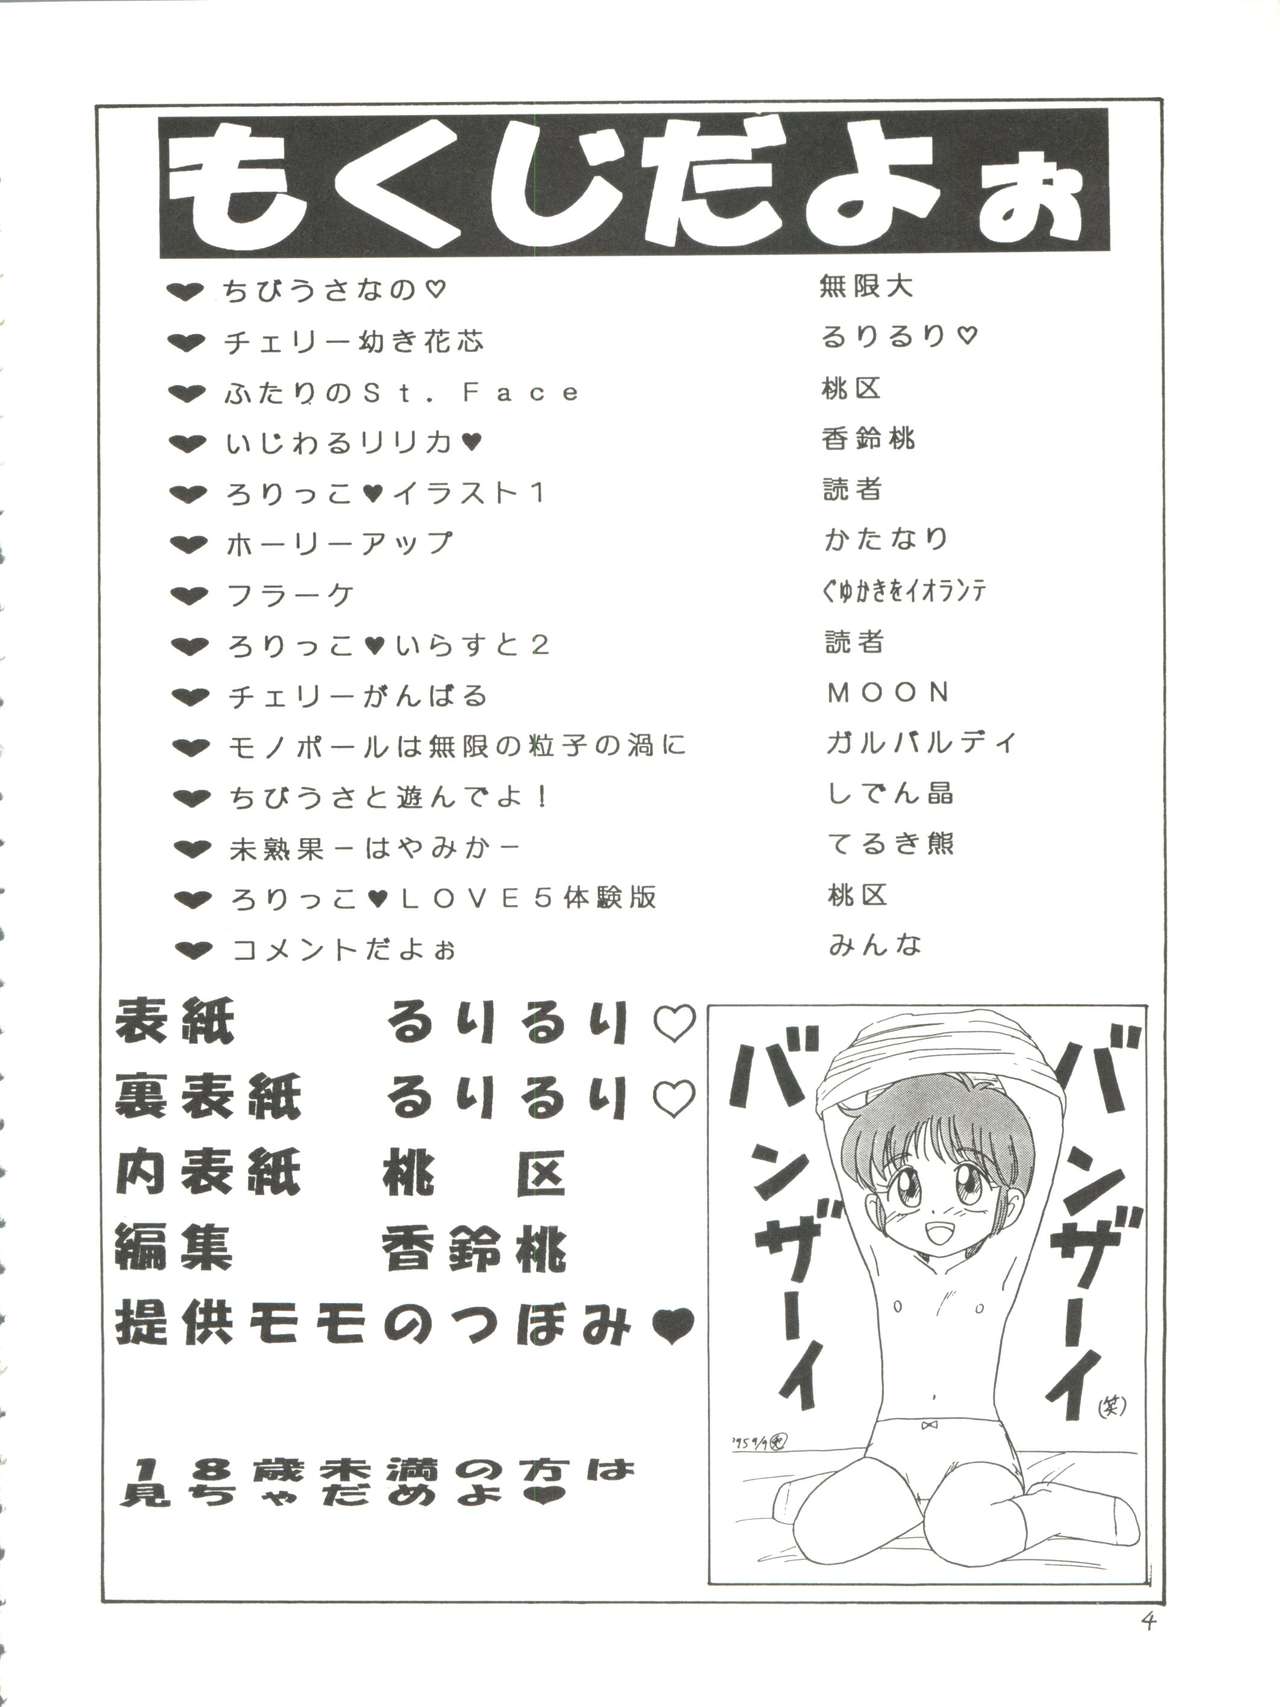 [Momo no Tsubomi (Various)] Lolikko LOVE 4 (Various) page 4 full